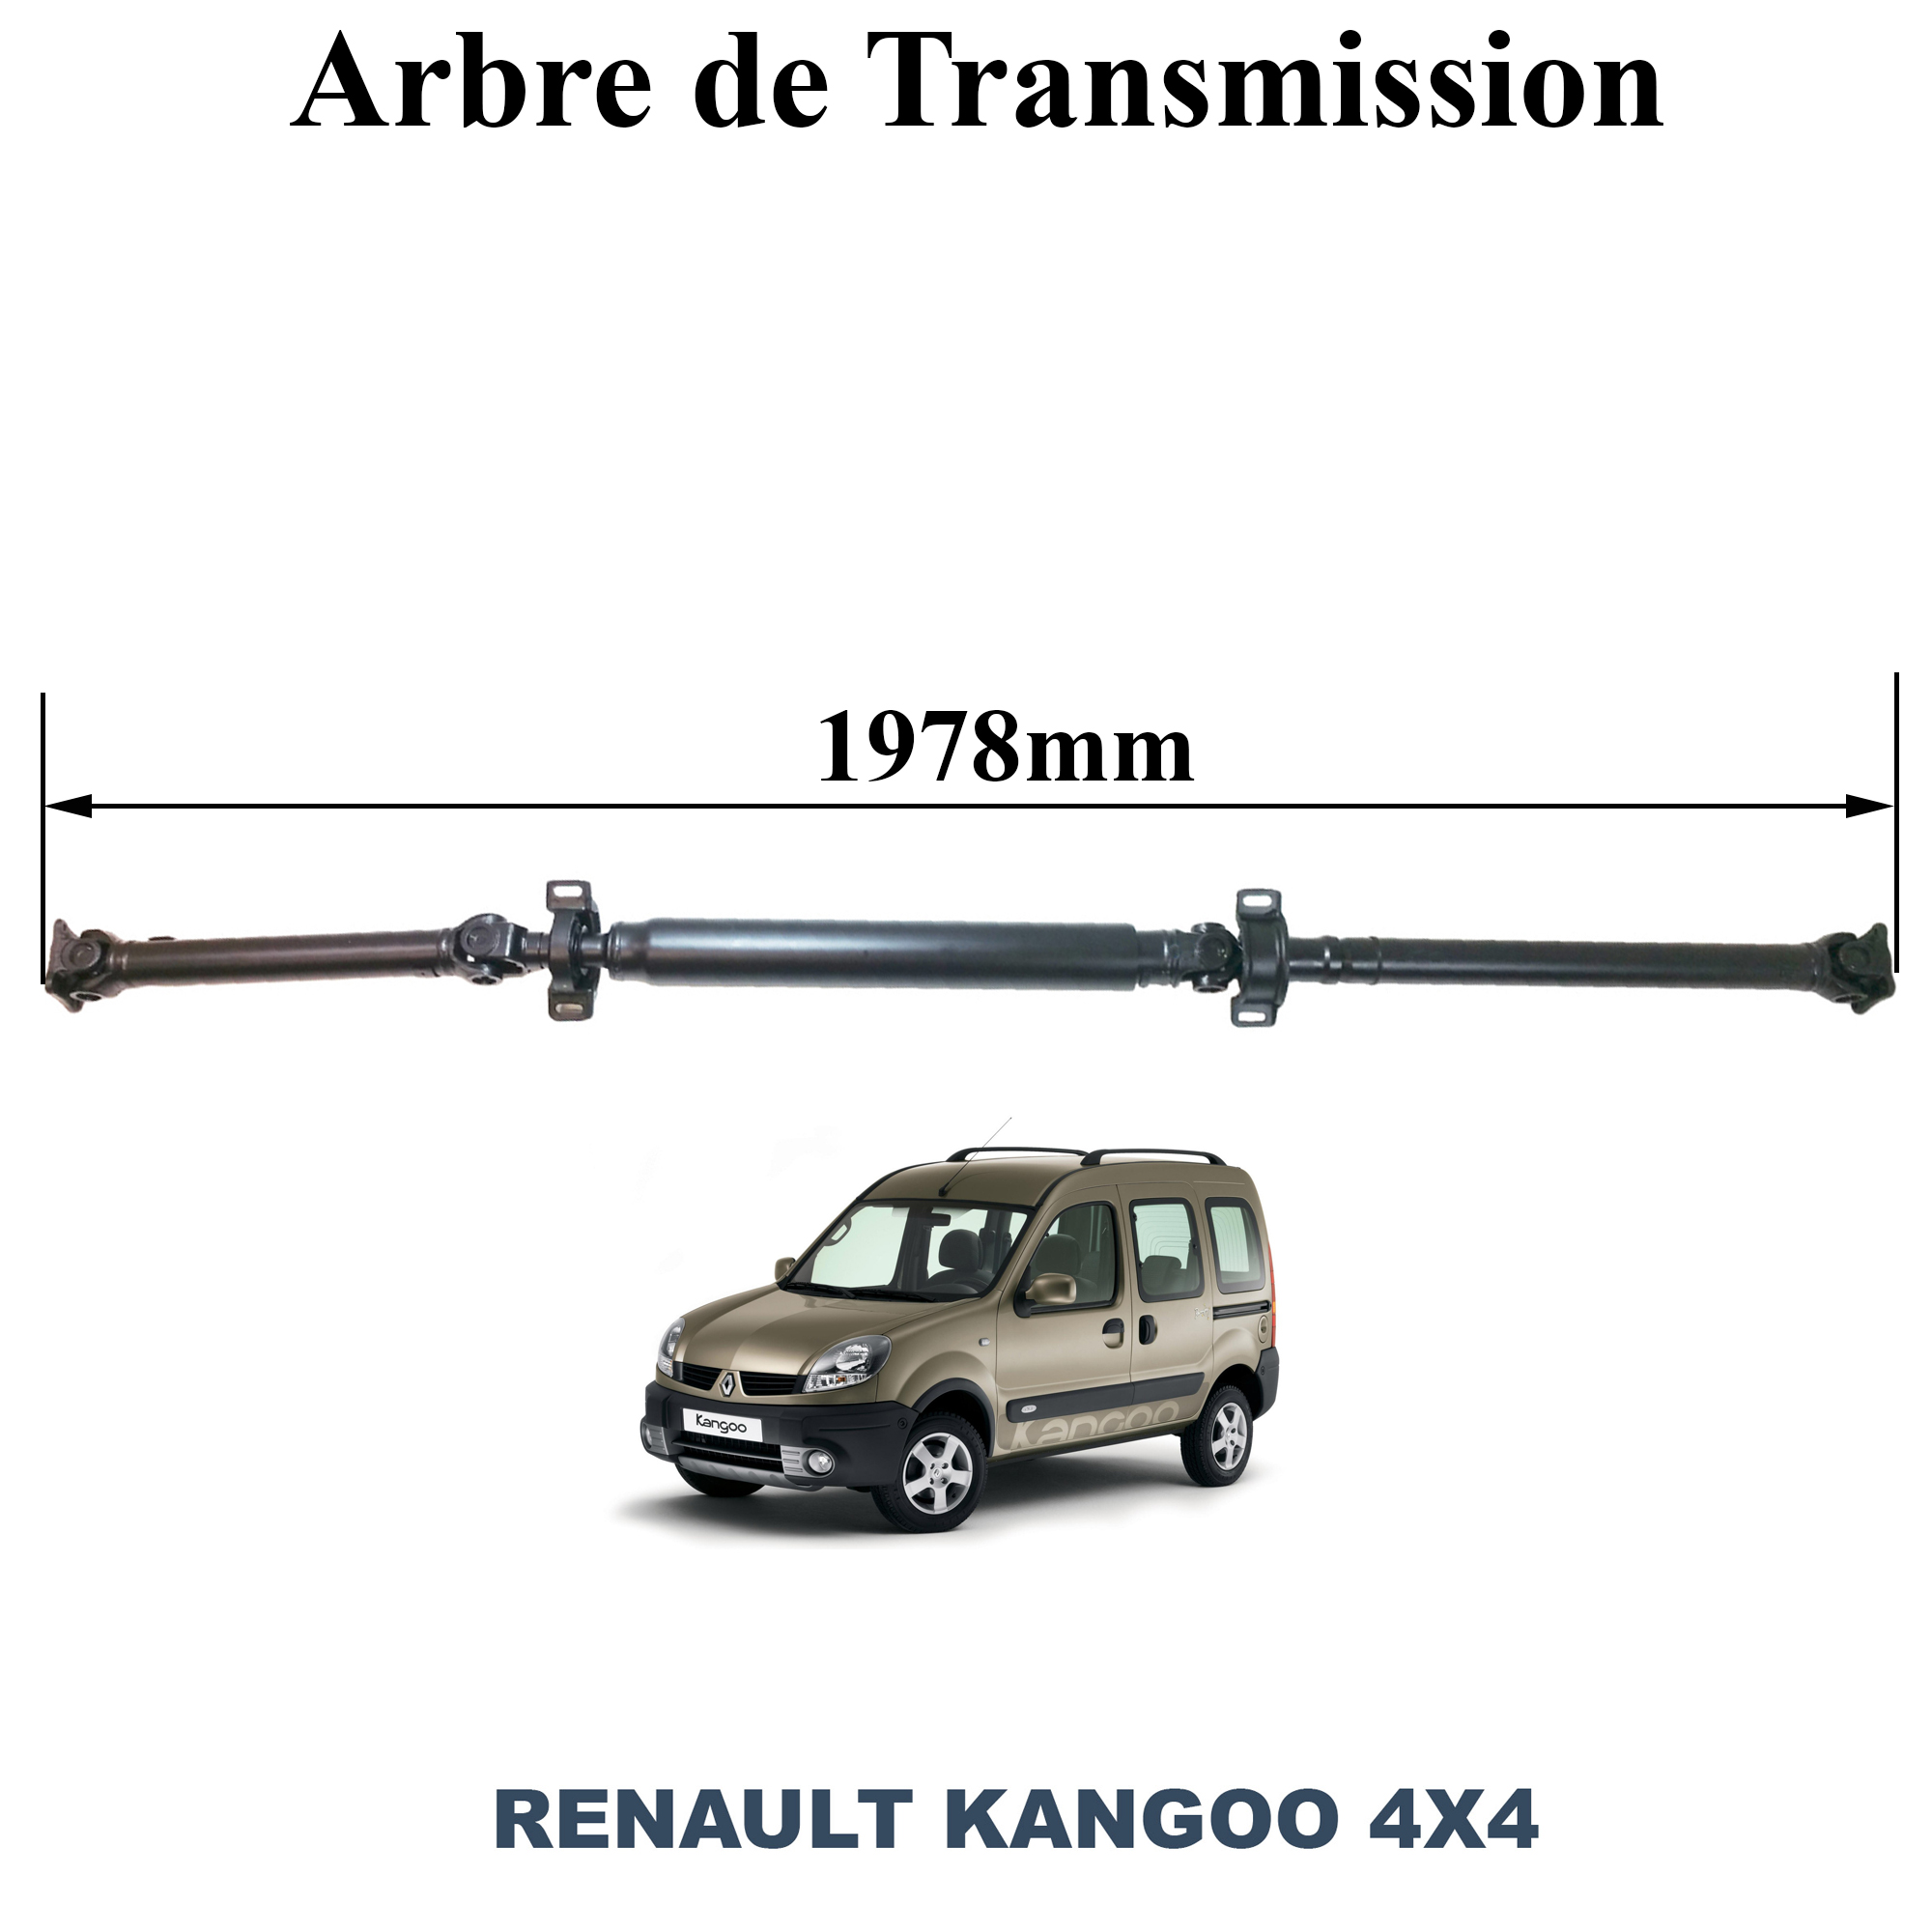 Arbre de transmission neuf et garanti pour votre Renault Kangoo 4X4